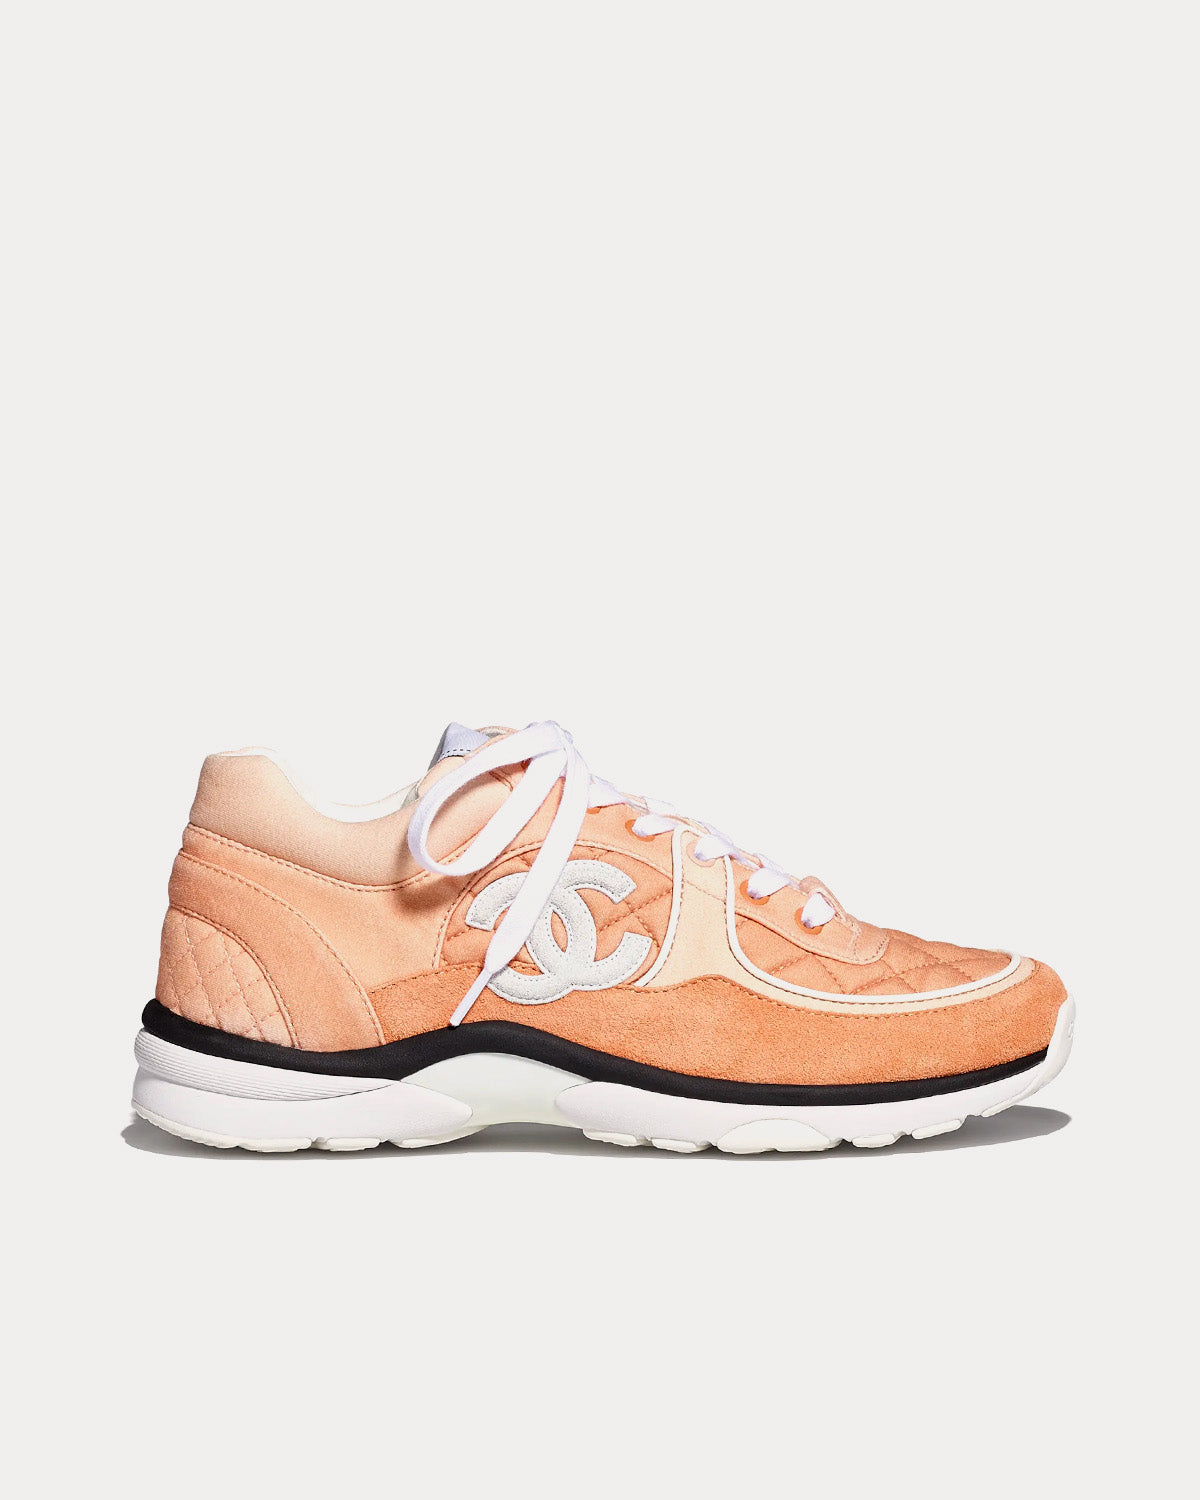 Fabric & Suede Calfskin Light Orange Low Top Sneakers